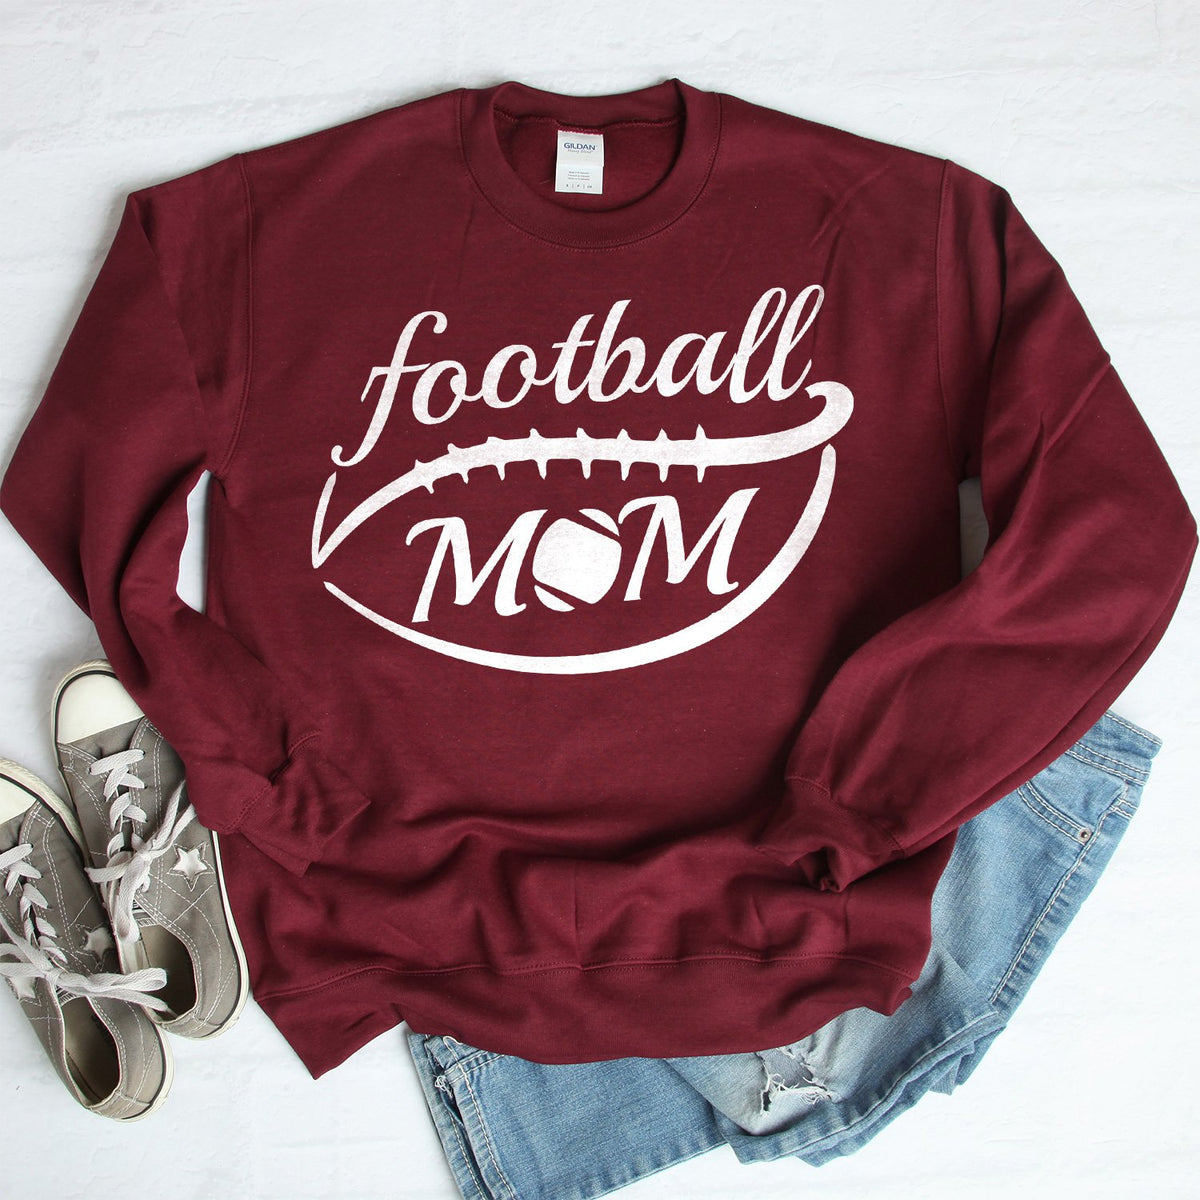 Football Mom - Long Sleeve Heavy Crewneck Sweatshirt